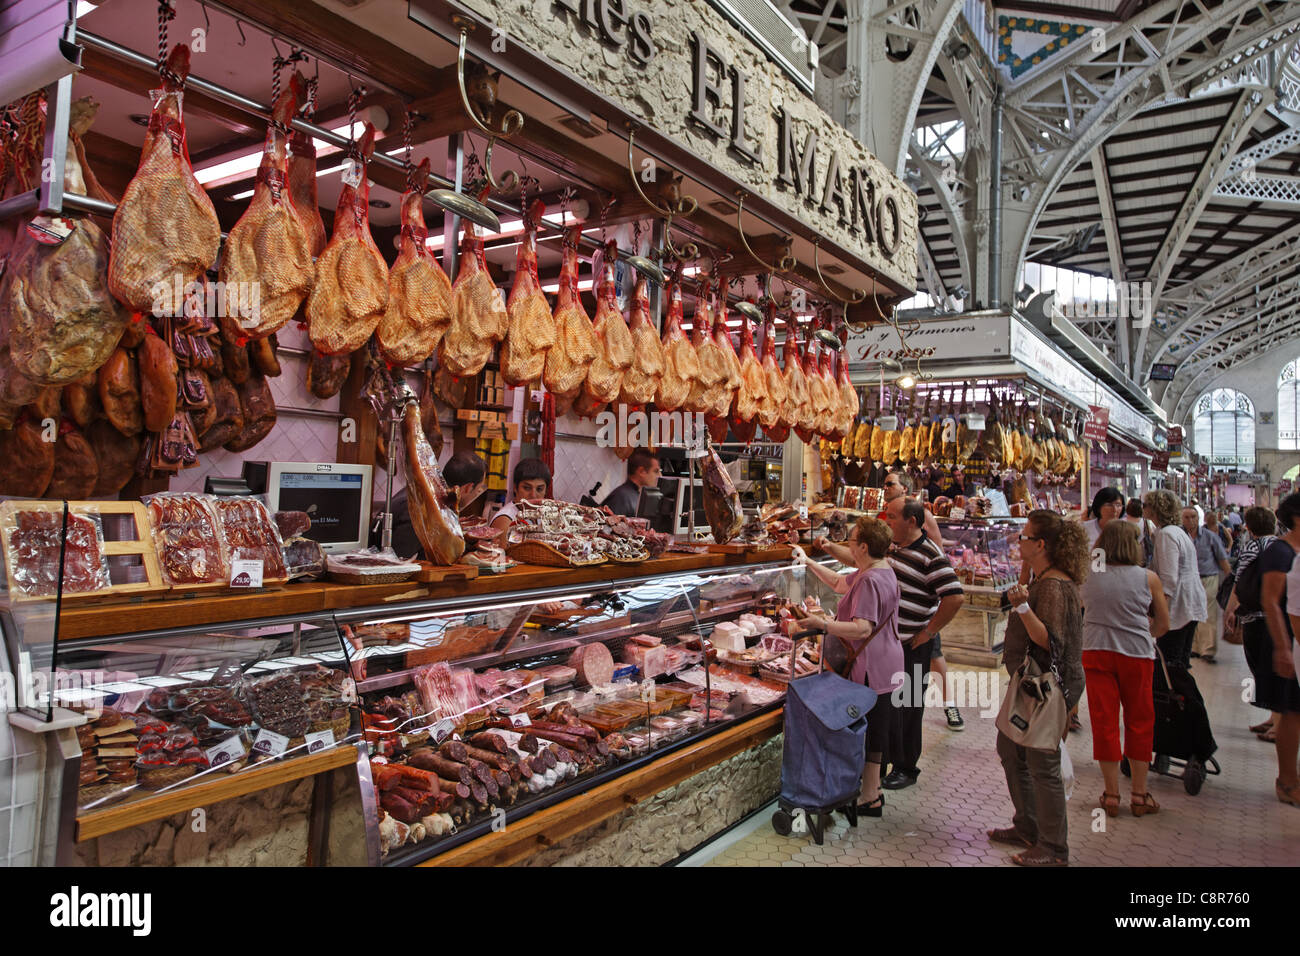 Central market hall , Delicatessen, Jamon, Mercado Central, Valencia, Spain Stock Photo